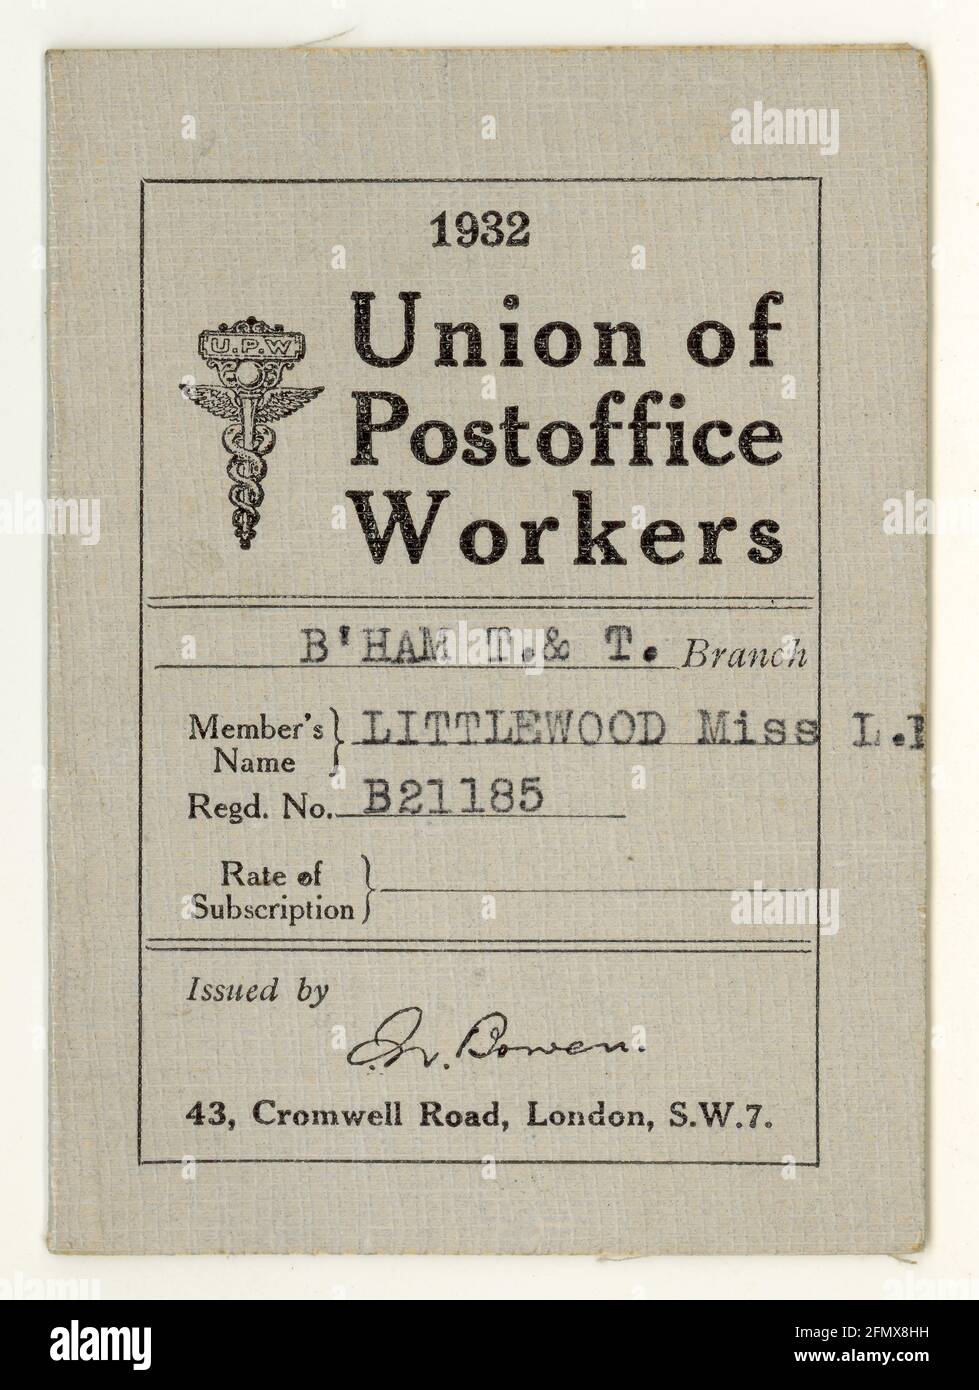 Original Union of Postoffice Workers (UPW) möglicherweise eine Mitgliedskarte, mit Quittungen für Abonnementzahlungen protokolliert - Birmingham T. & T. Niederlassung, datiert 1932, Großbritannien Stockfoto